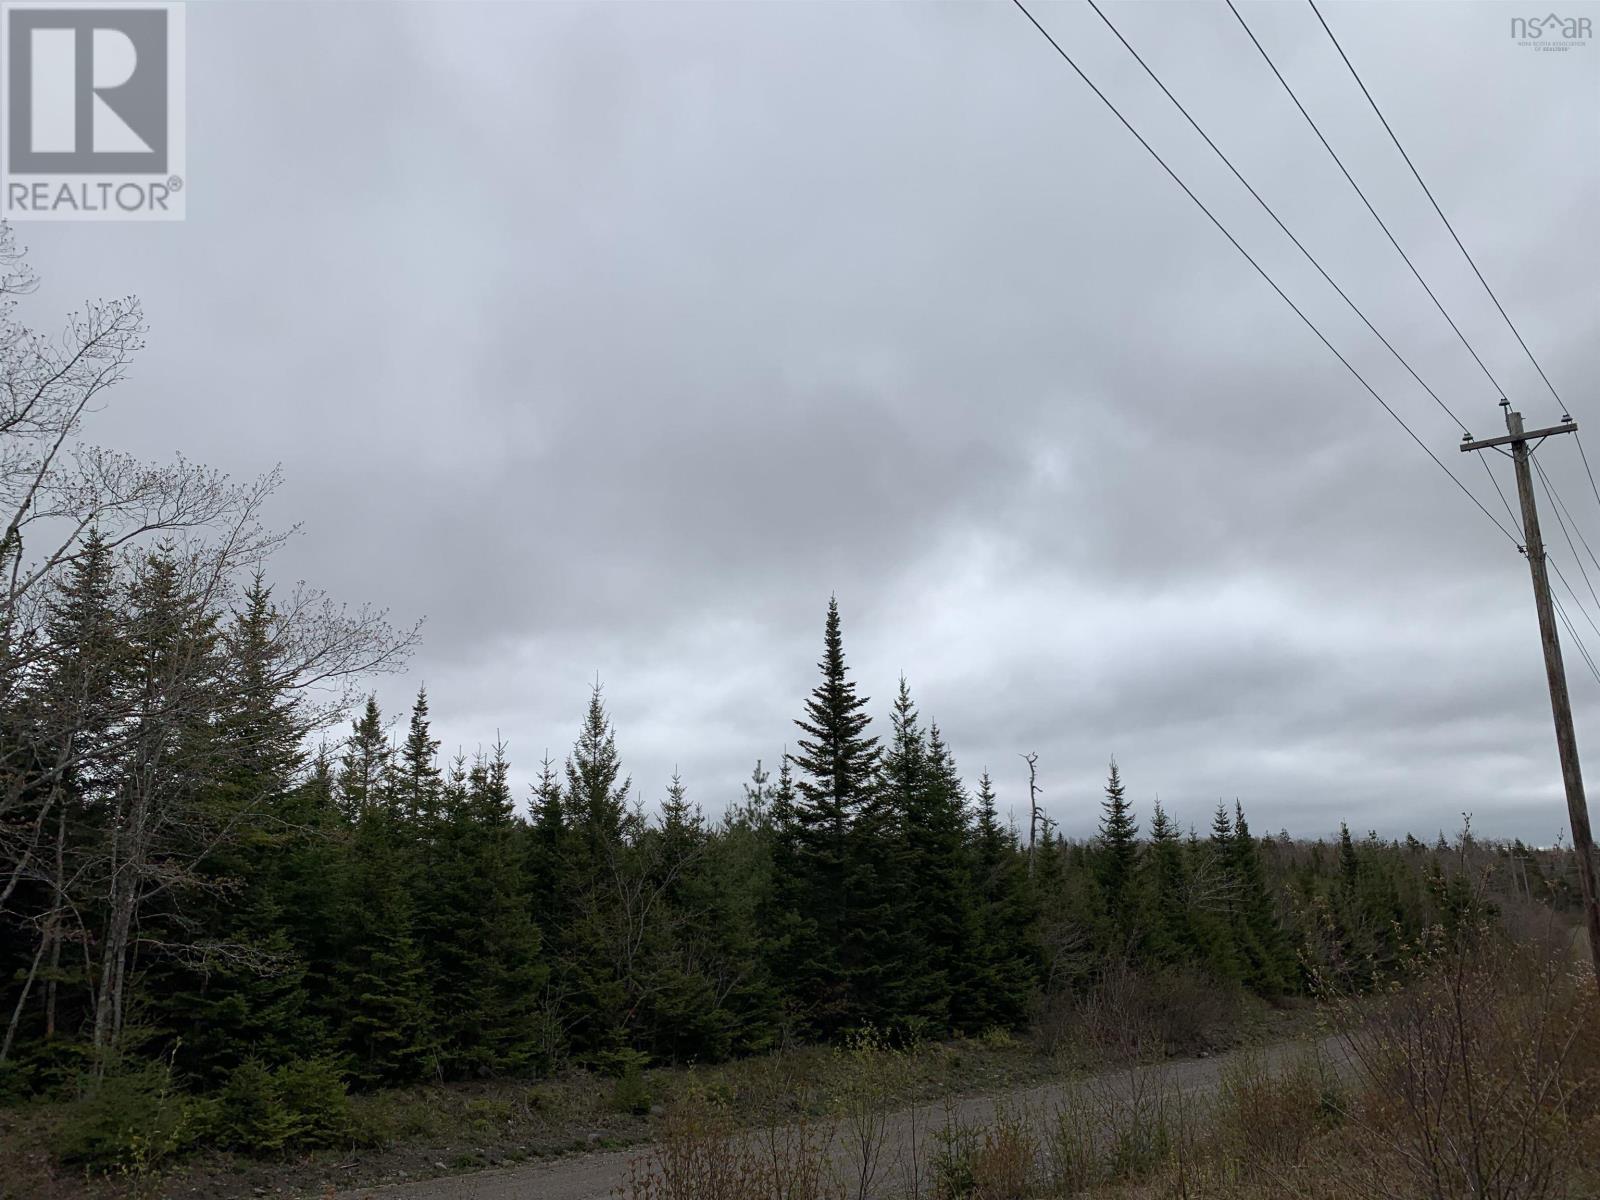 Acreage Caribou Mines Road, caribou mines, Nova Scotia